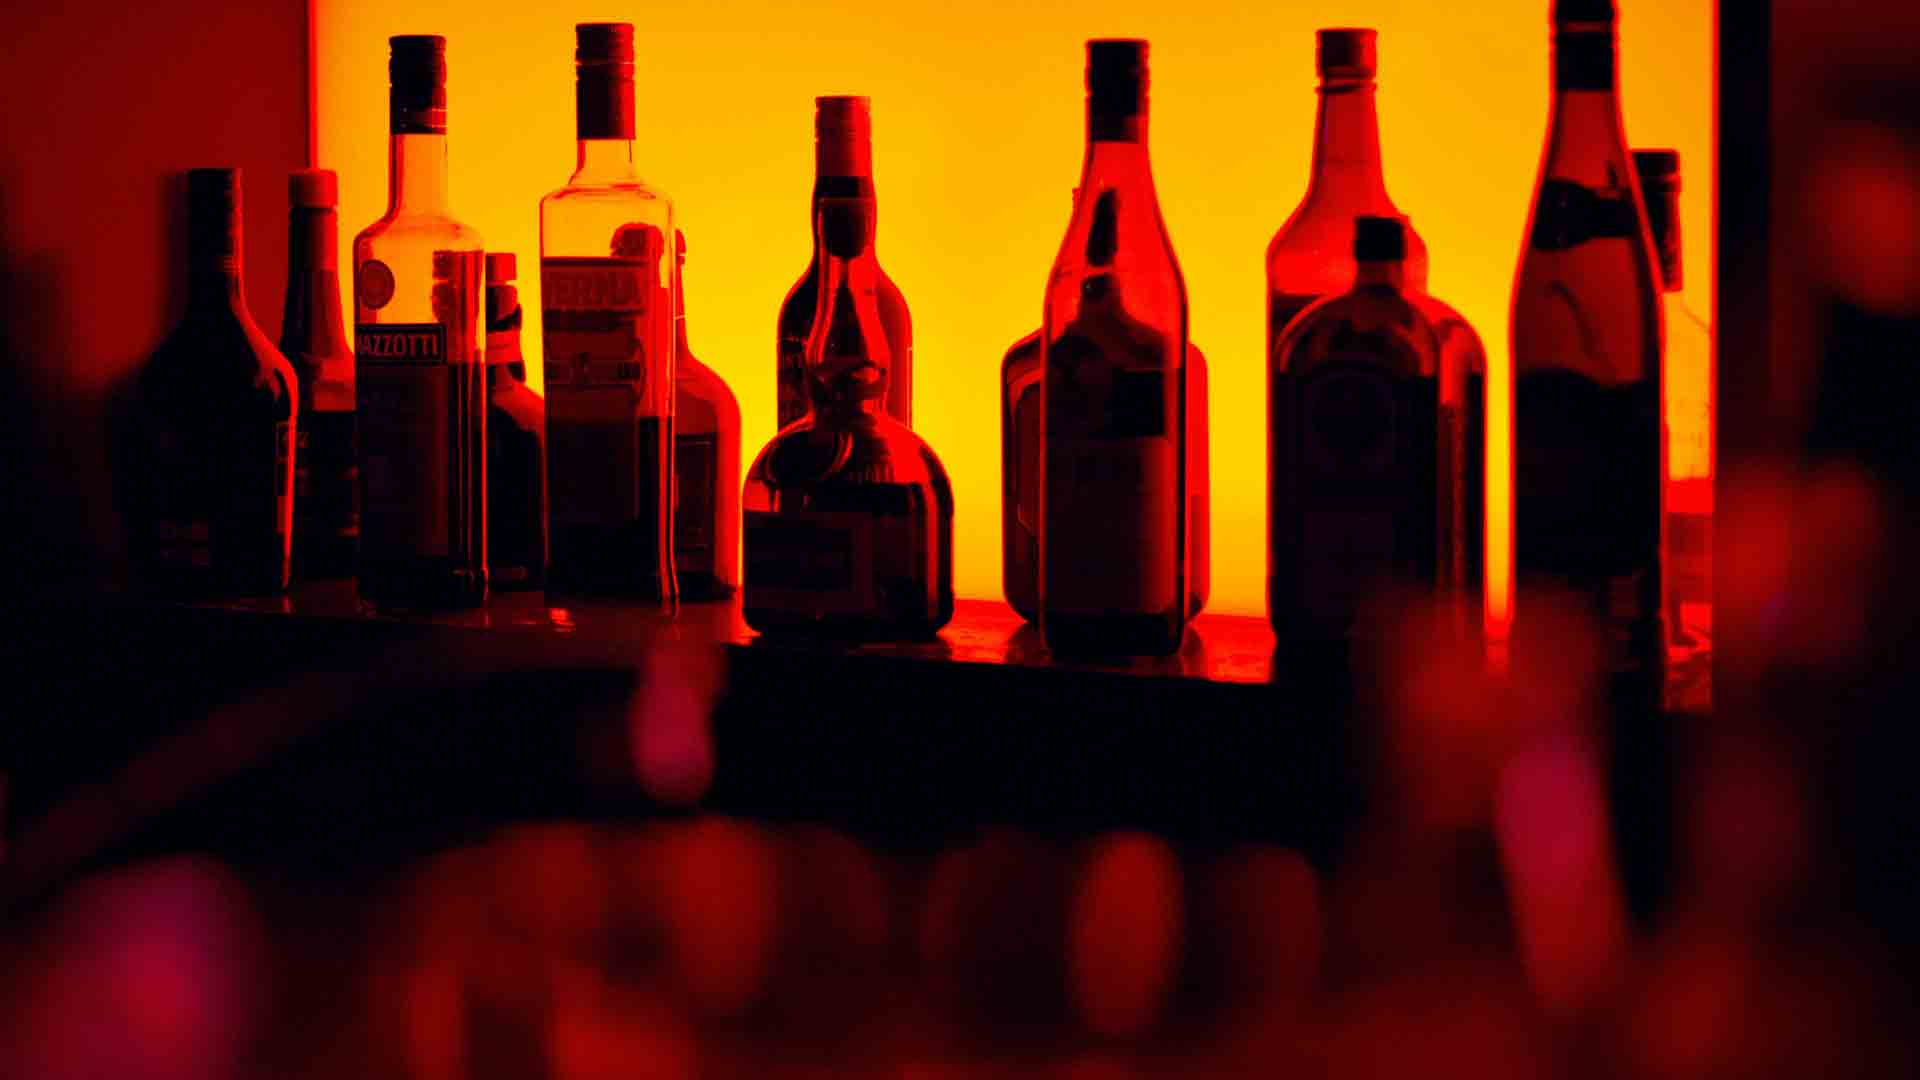 El alcohol es responsable de una de cada 20 muertes en el mundo, según la OMS